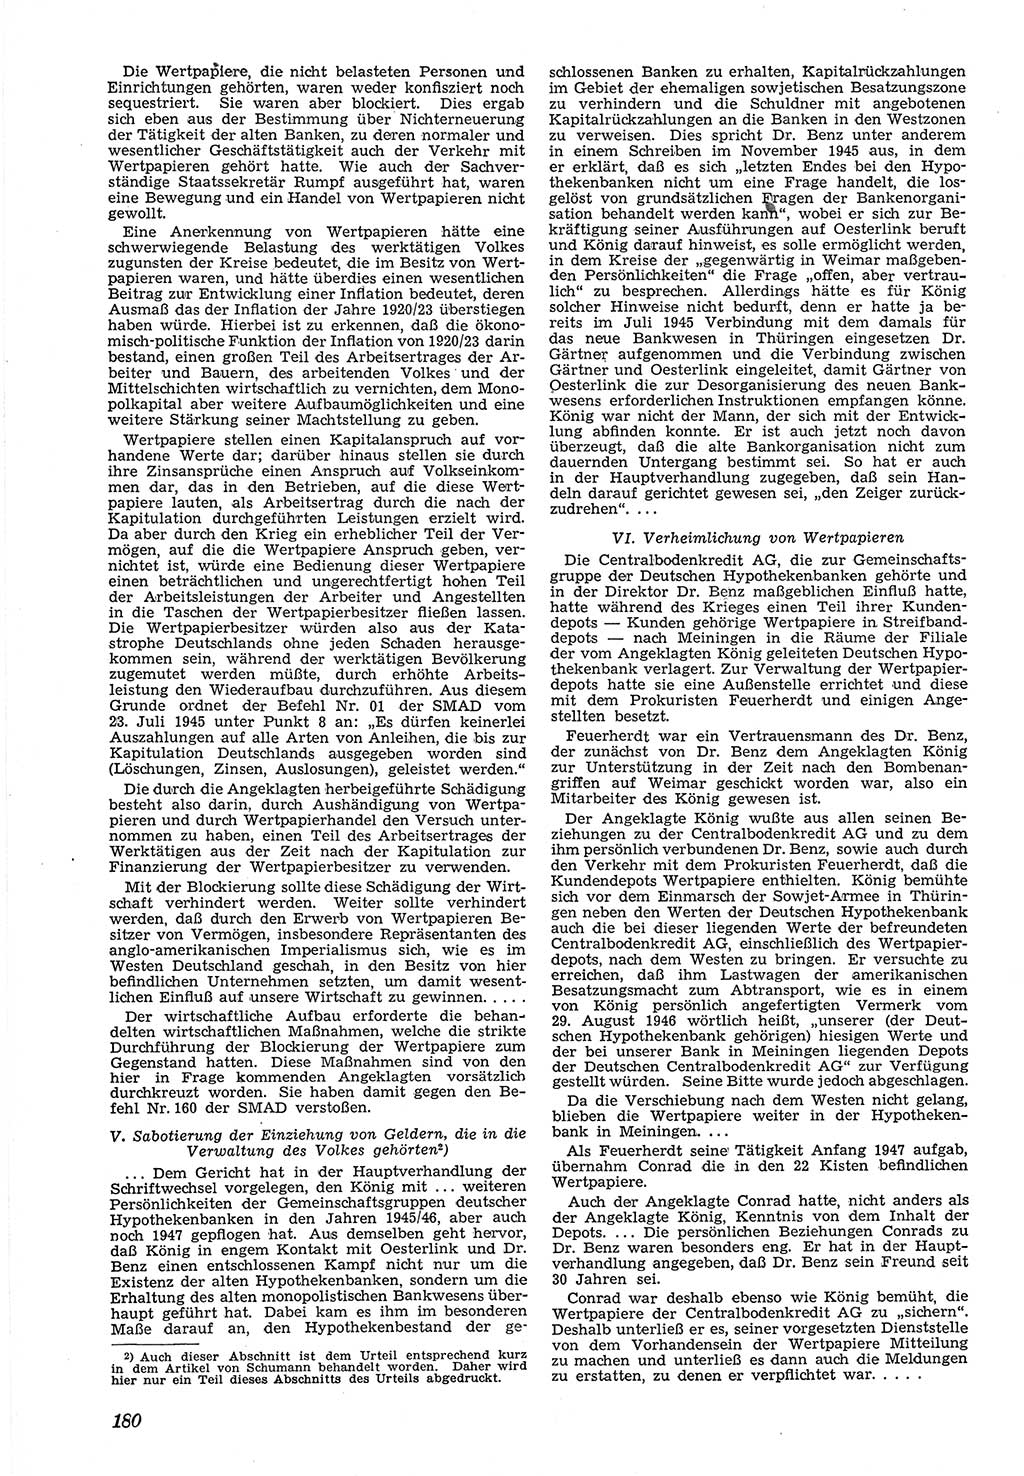 Neue Justiz (NJ), Zeitschrift für Recht und Rechtswissenschaft [Deutsche Demokratische Republik (DDR)], 5. Jahrgang 1951, Seite 180 (NJ DDR 1951, S. 180)